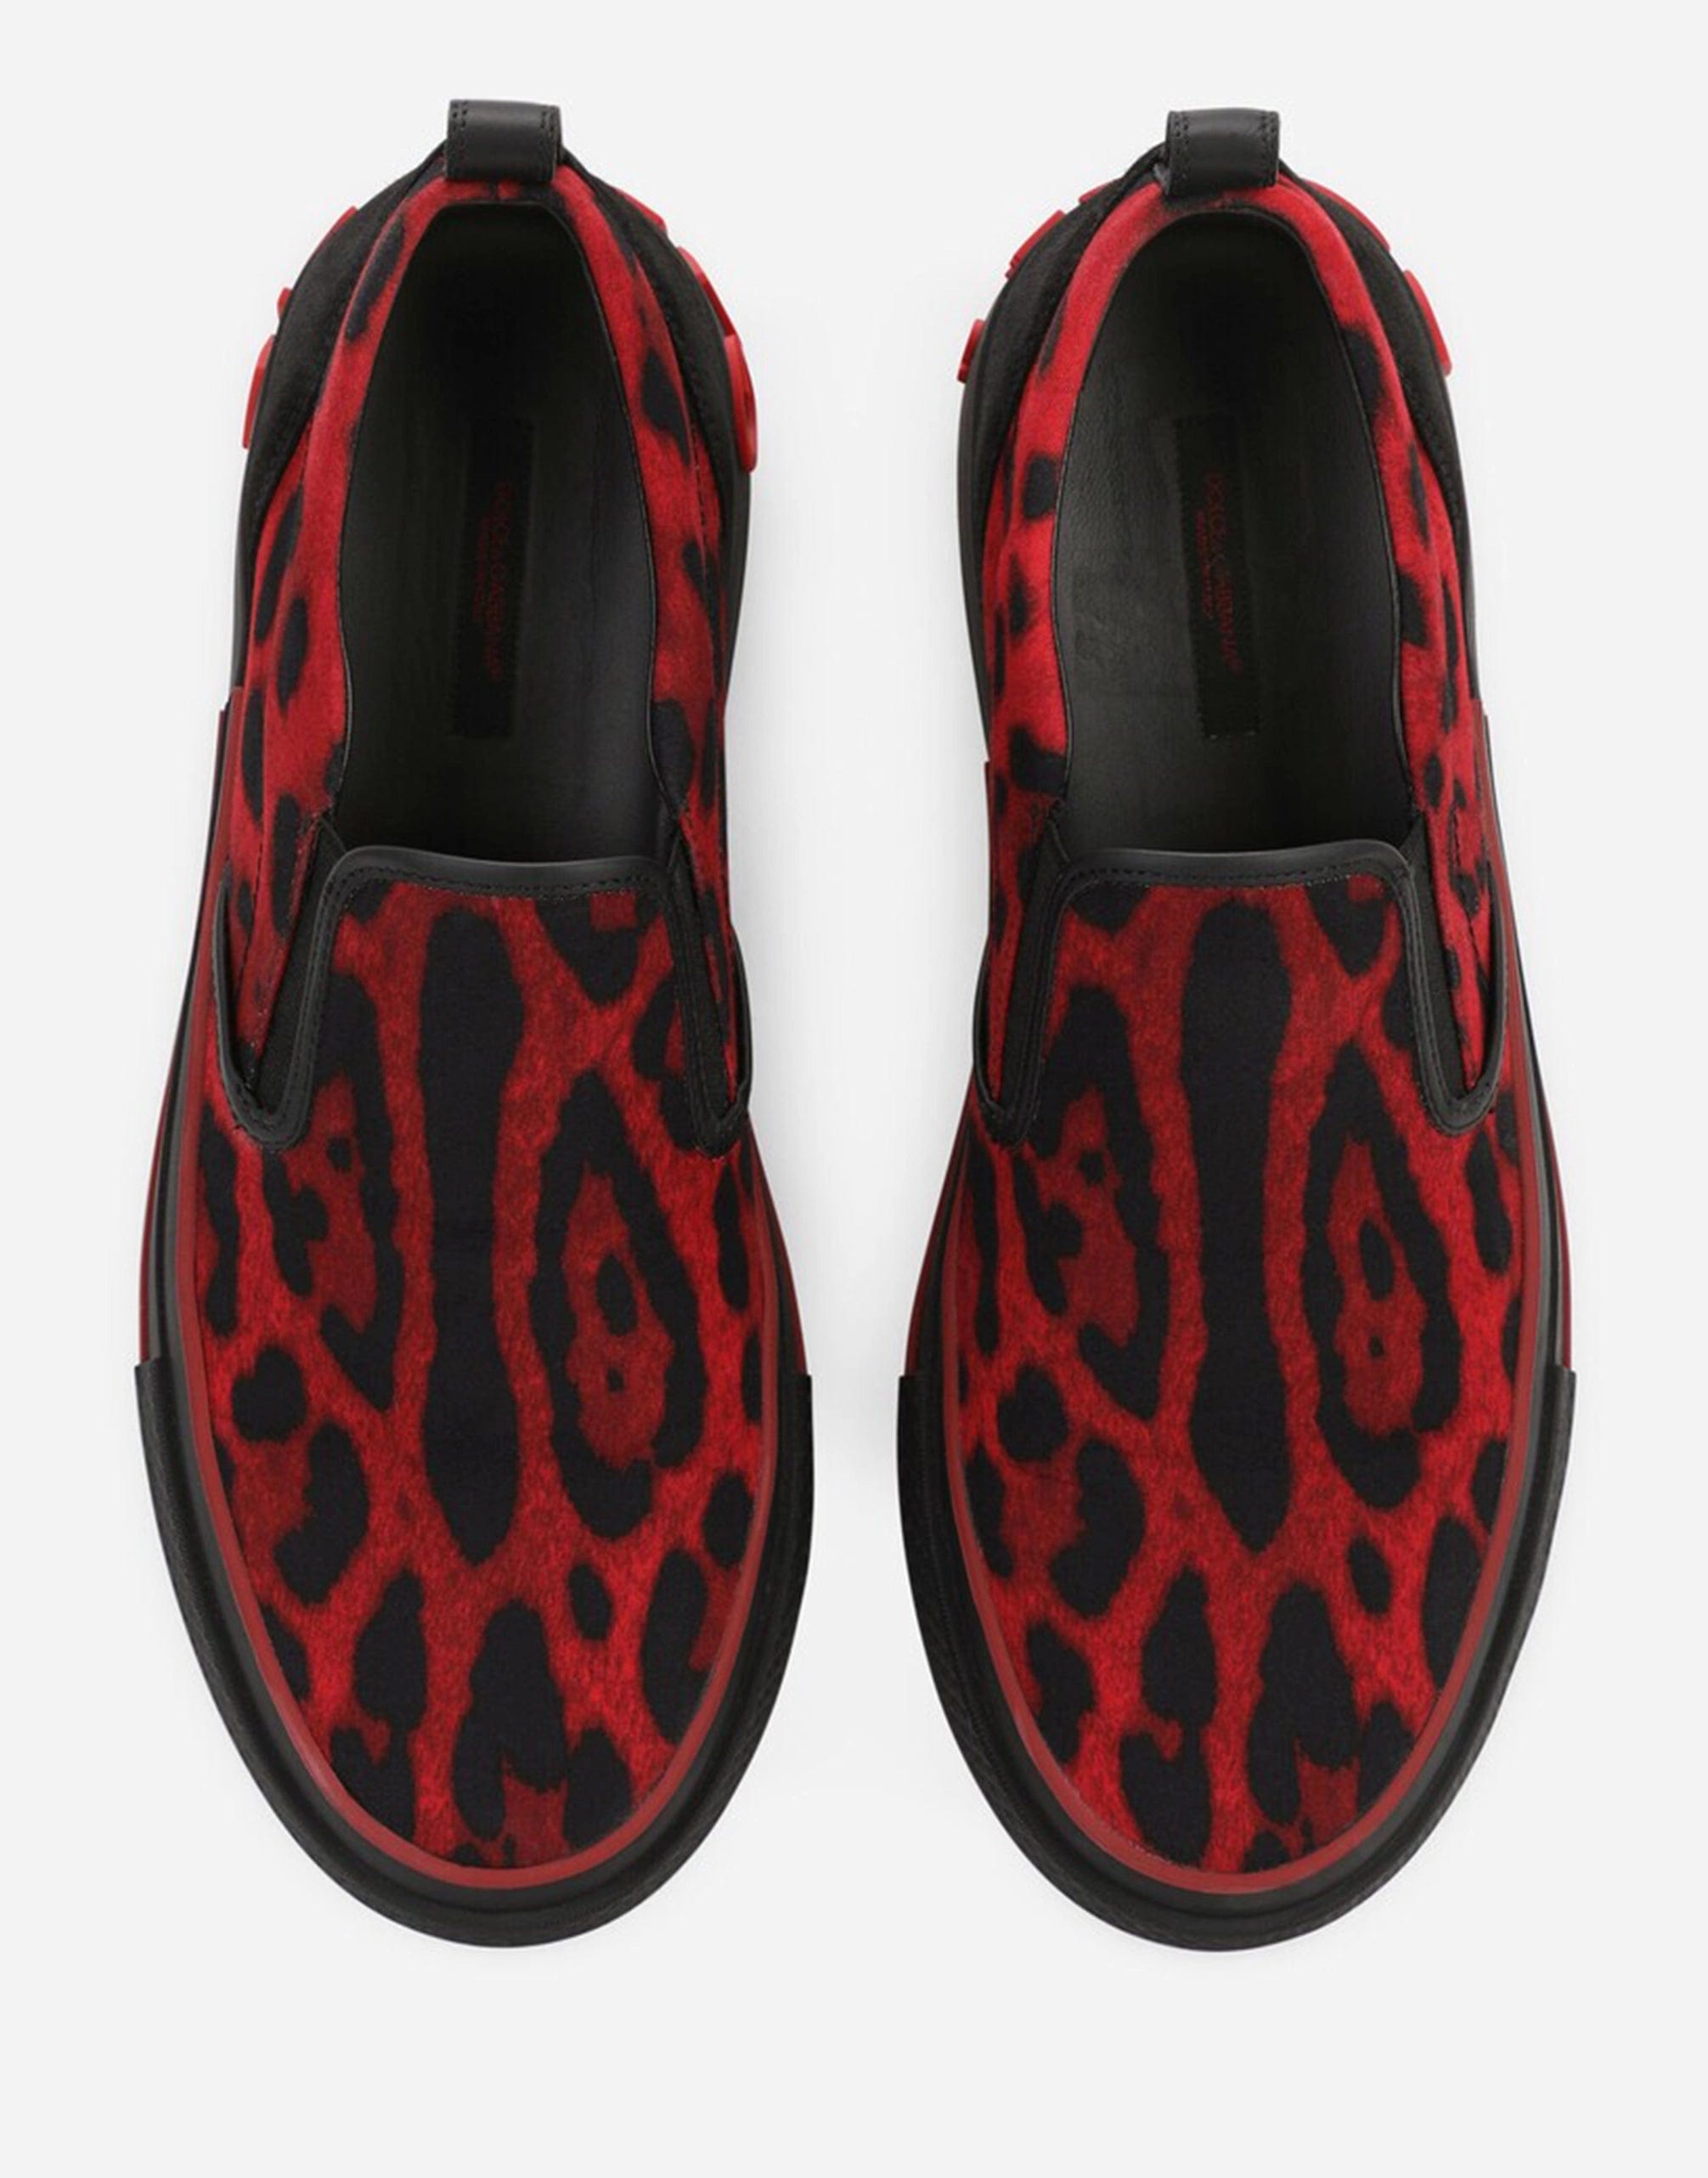 Aangepast 2. Zero slip-on sneakers in luipaard-print